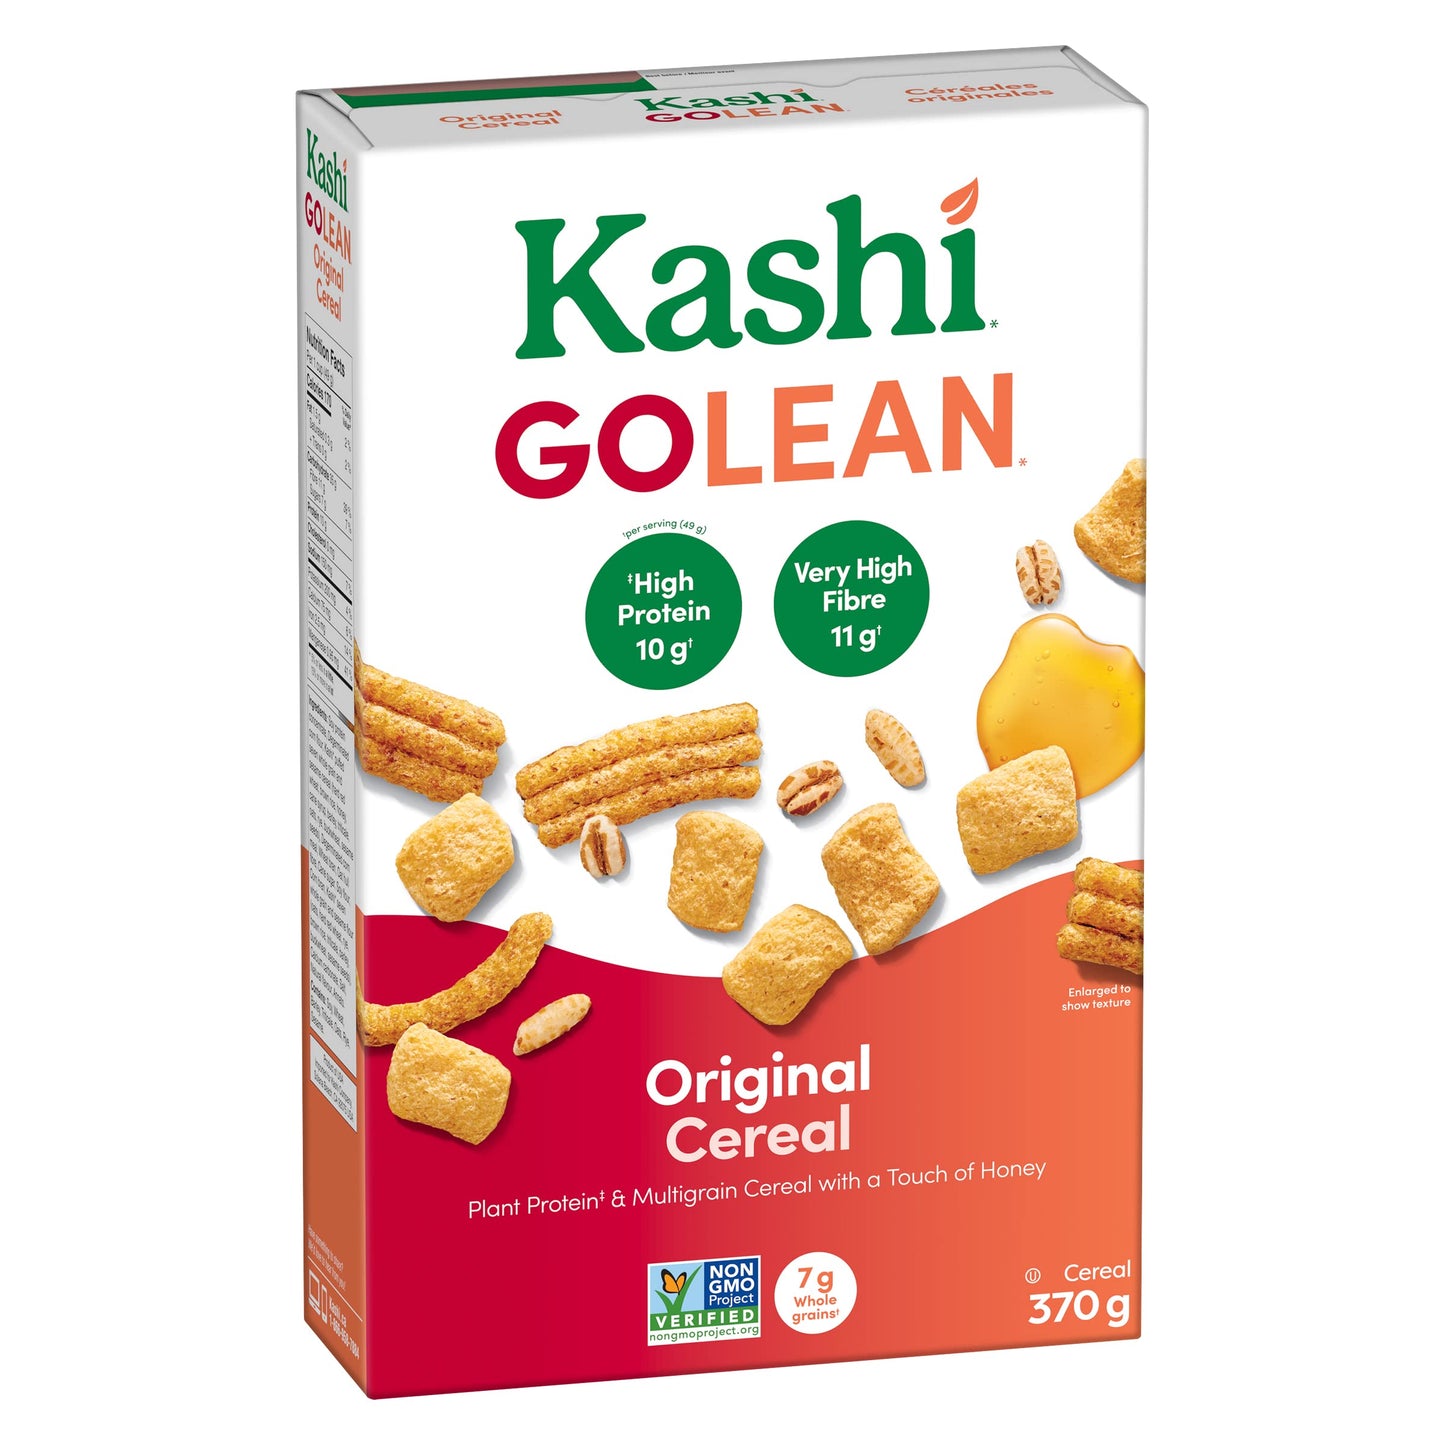 Kashi Go Lean Original Cereal 1